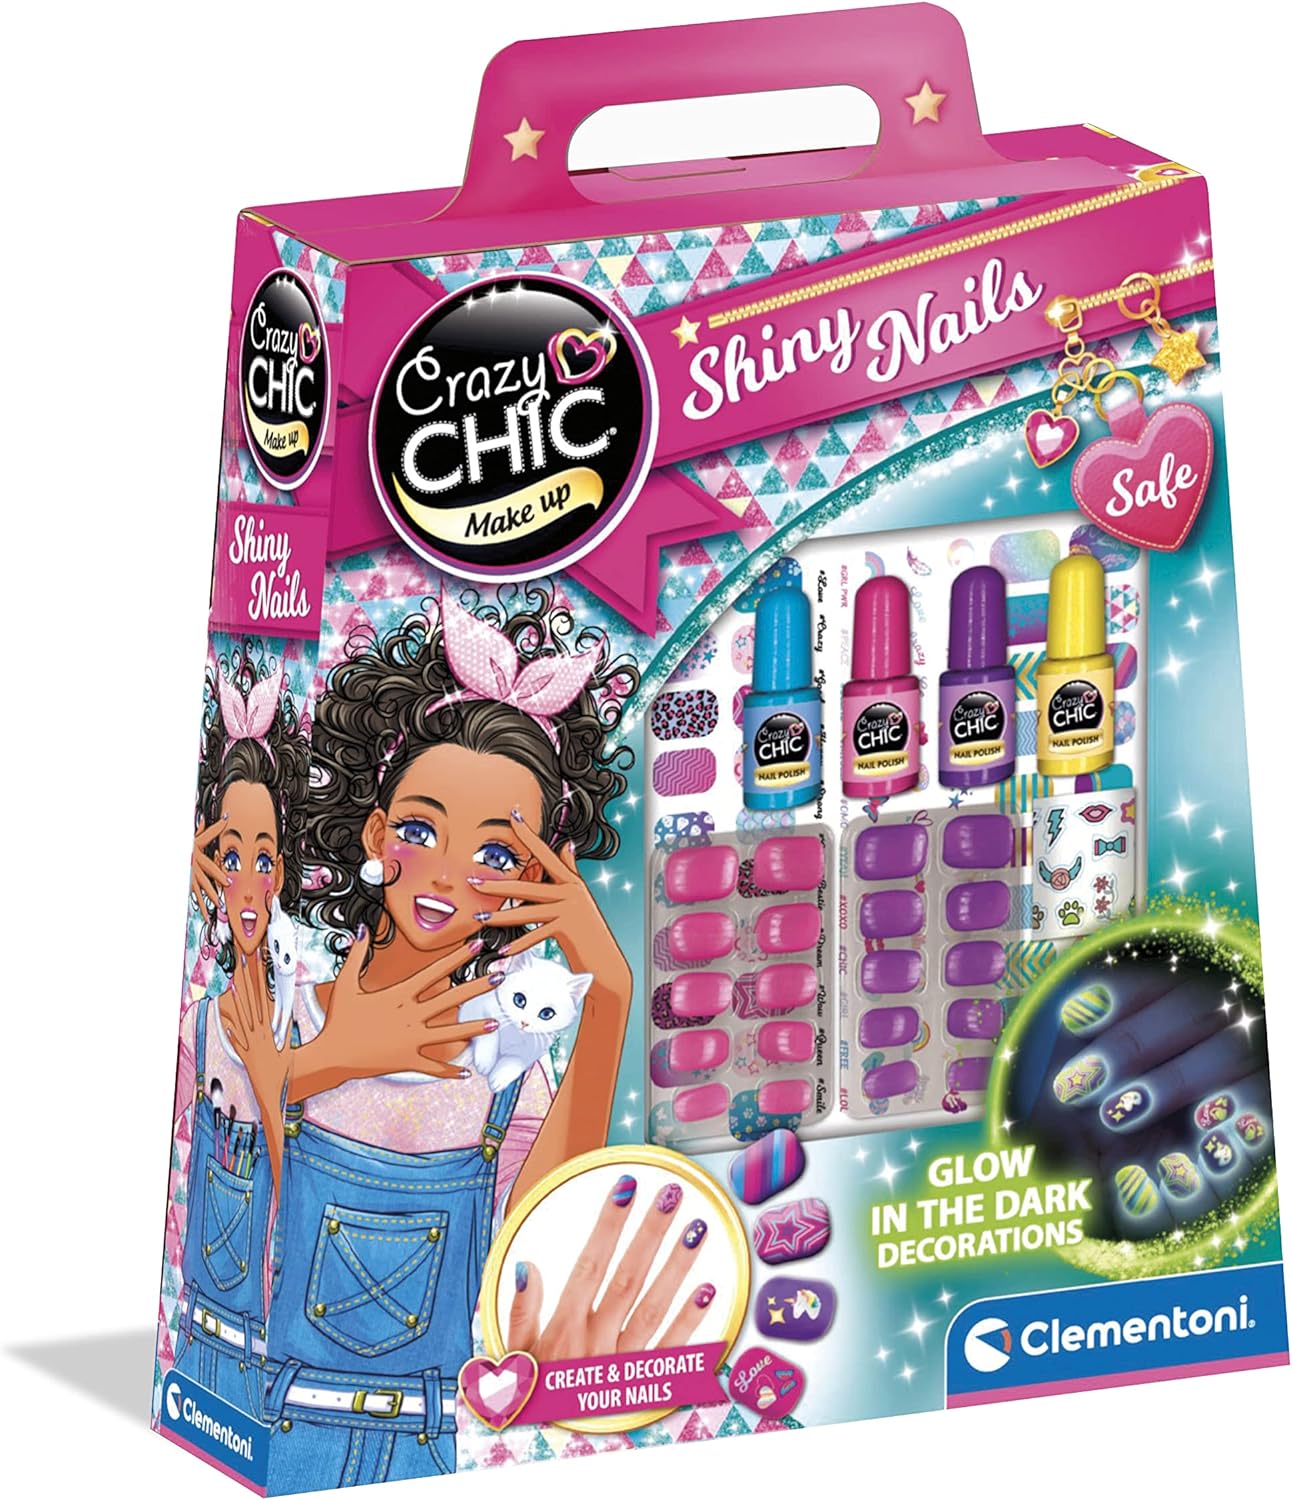 Crazy Chic Shiny Nails